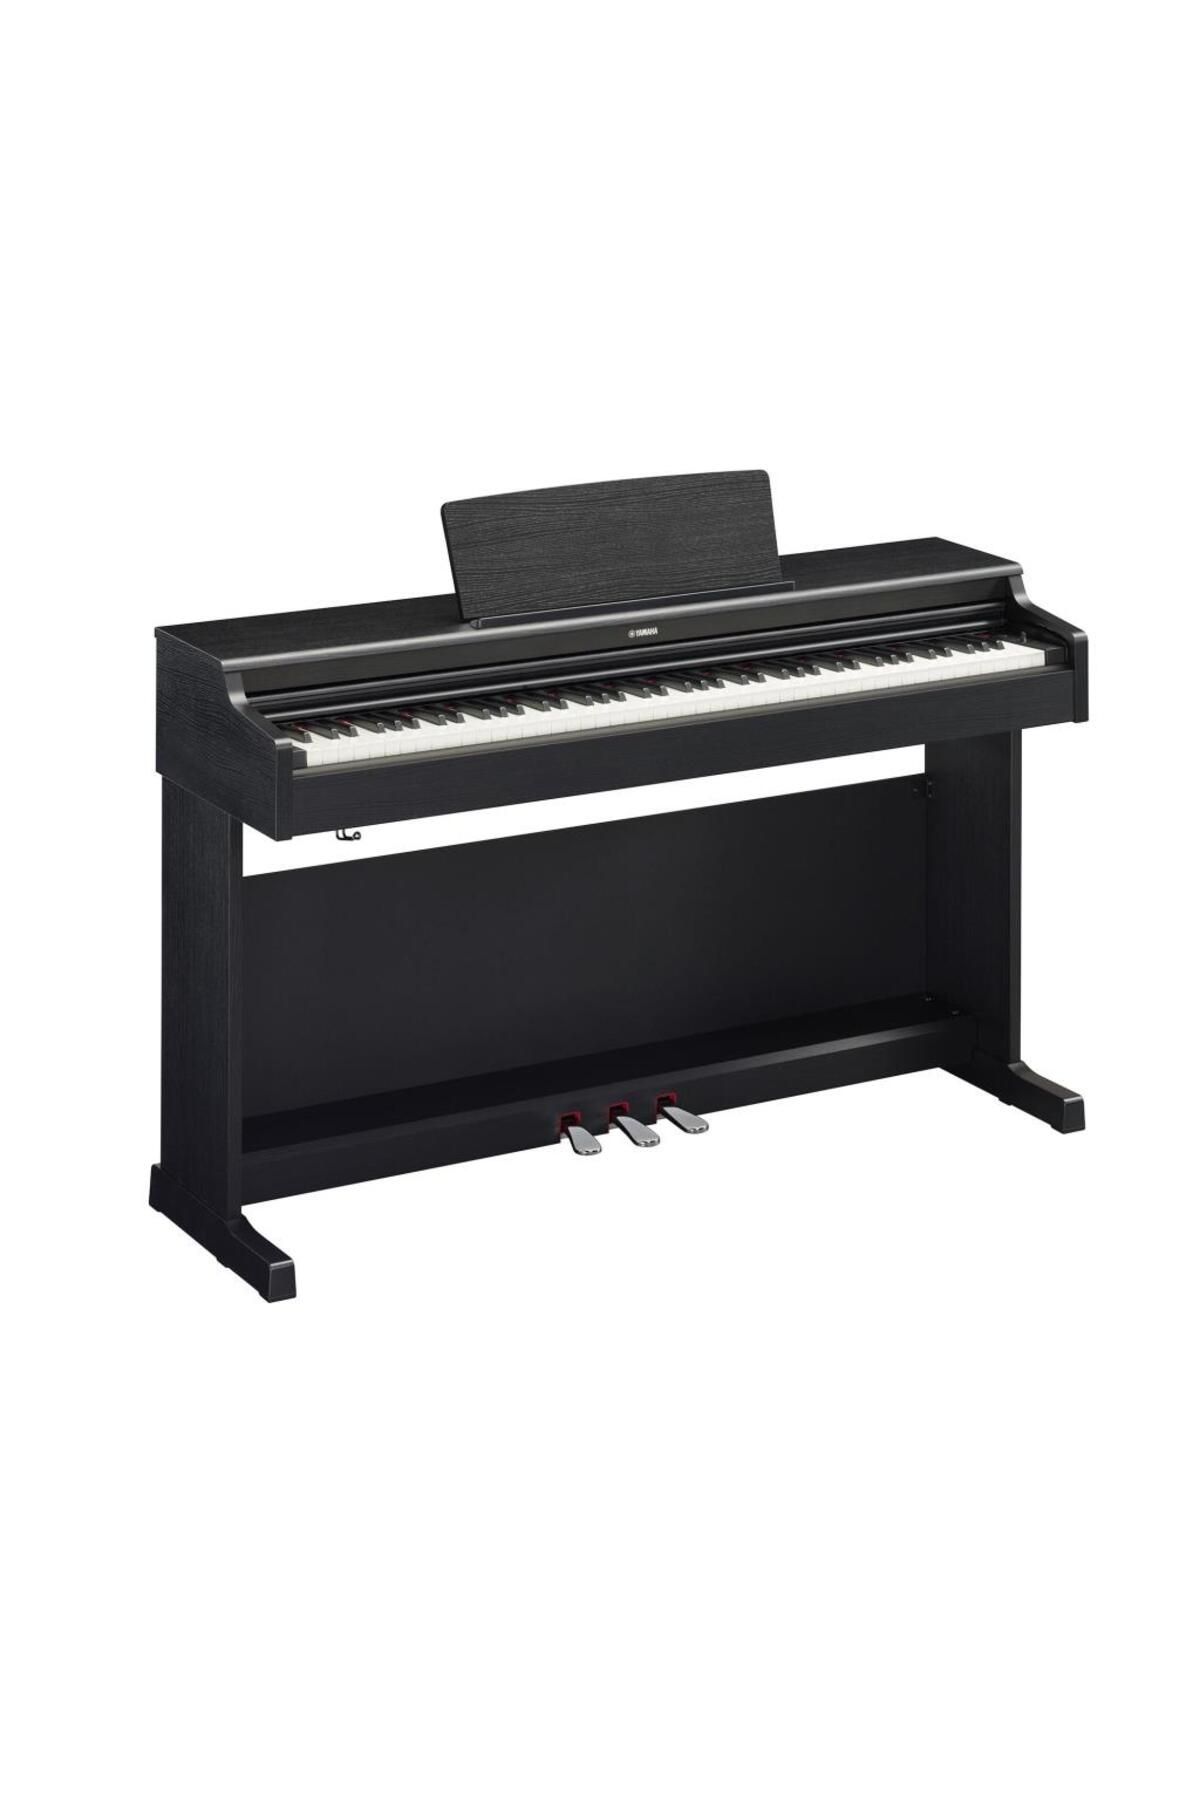 Yamaha Ydp165b Dijital Piyano (SİYAH) (TABURE KULAKLIK)